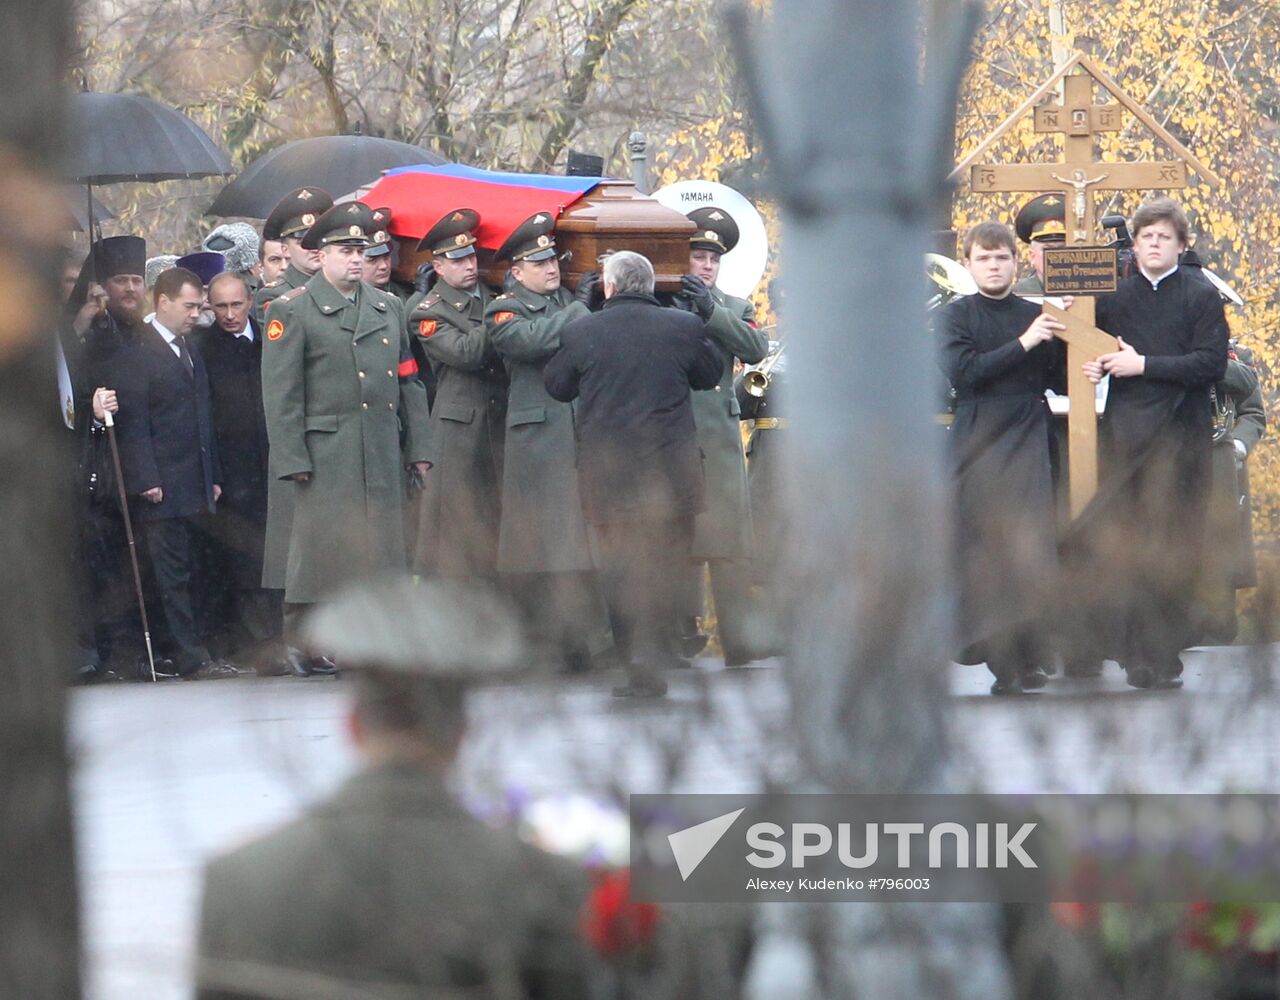 Funeral service for Viktor Chernomyrdin